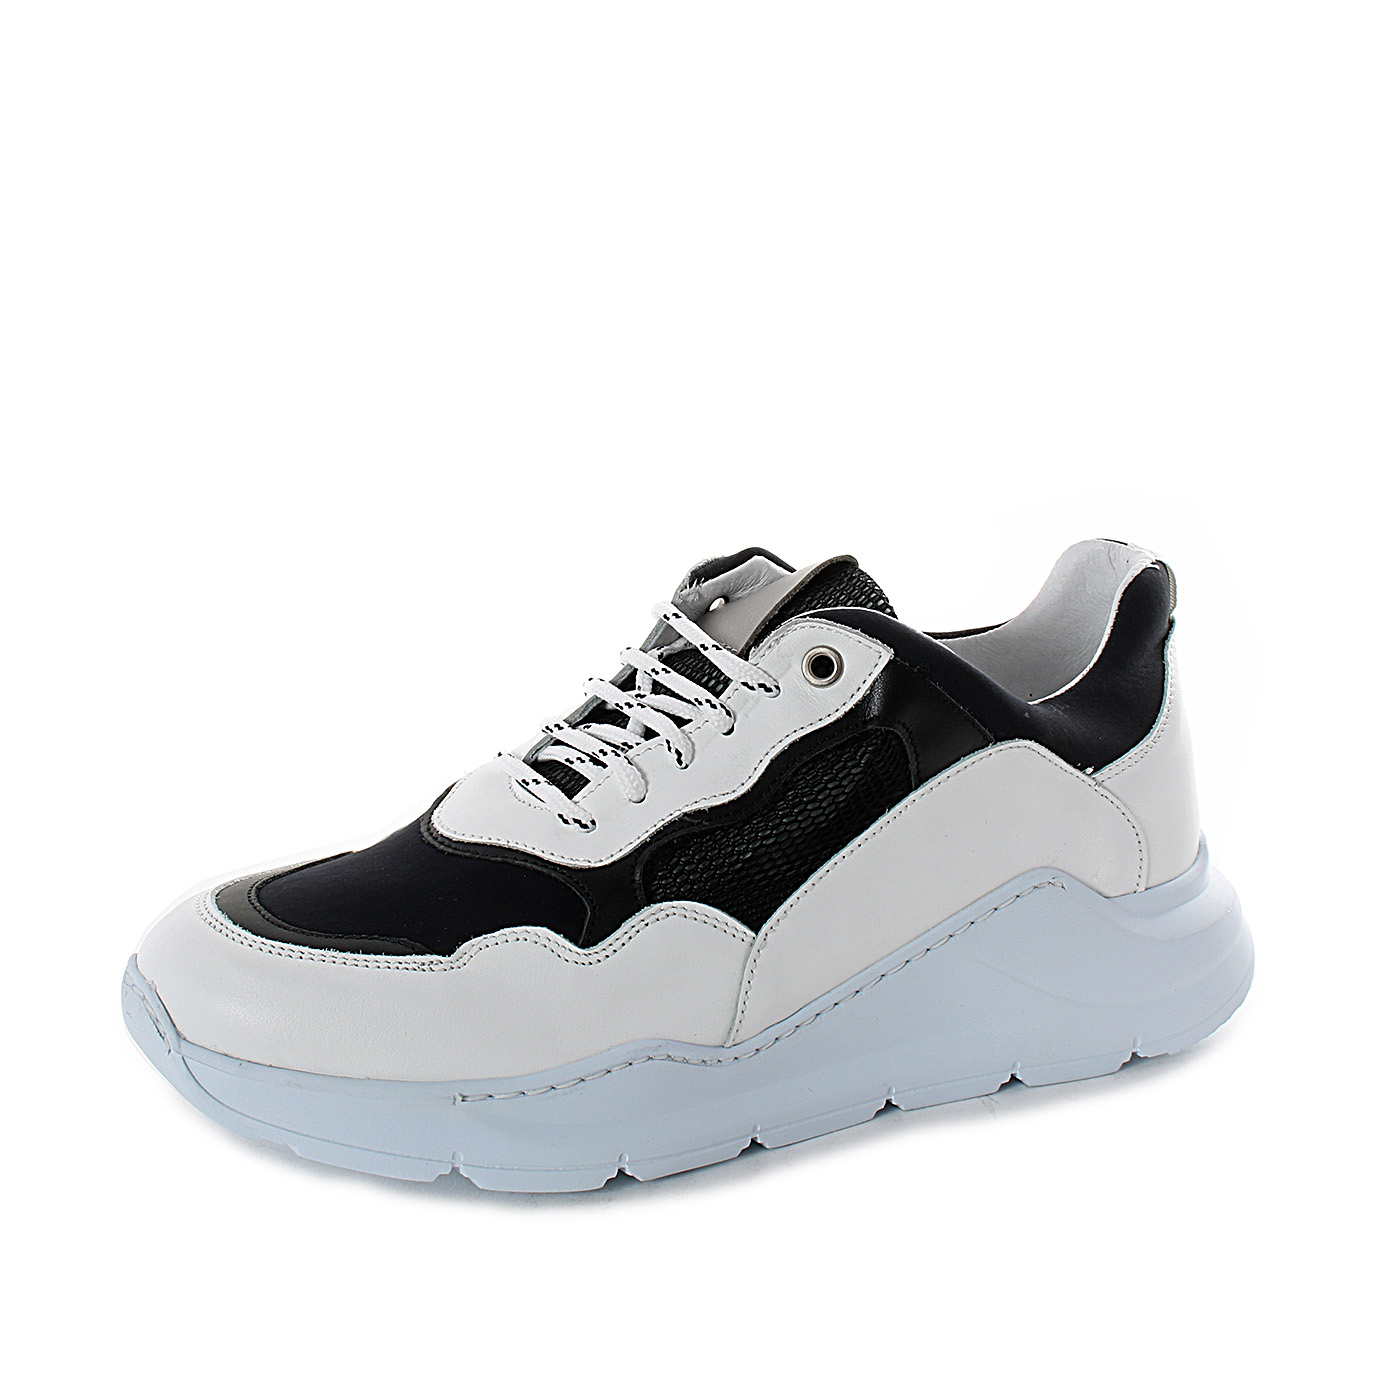 DADA - Sneakers bicolore in vera nappa da uomo con suola alta - Bianco/Nero  - MitShopping - Abbigliamento e scarpe